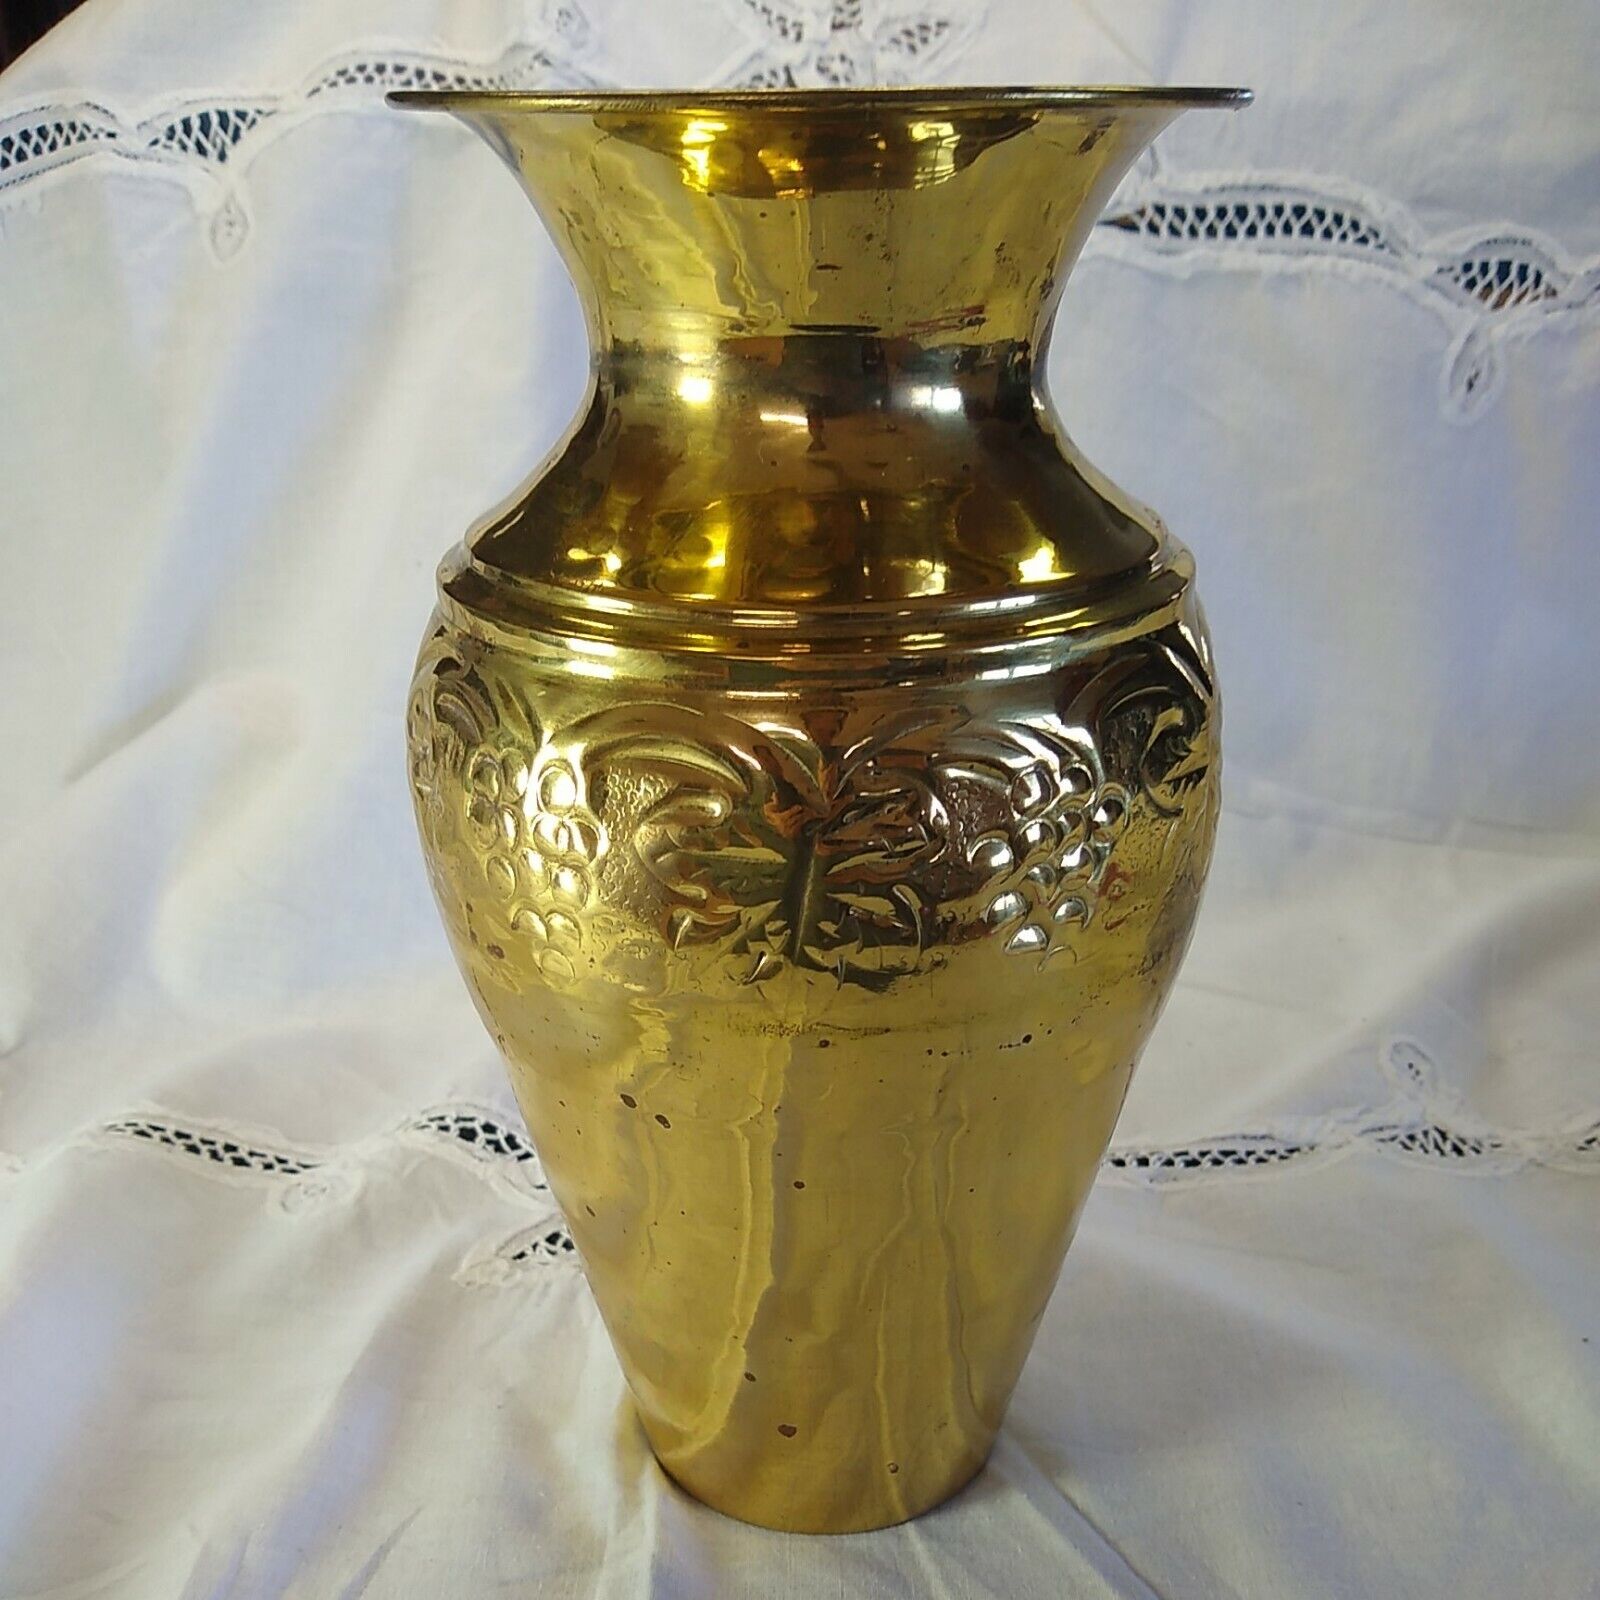 Vintage Lacquer Brass Vase Grape Leaf Design Made In India Elegant Expressions 